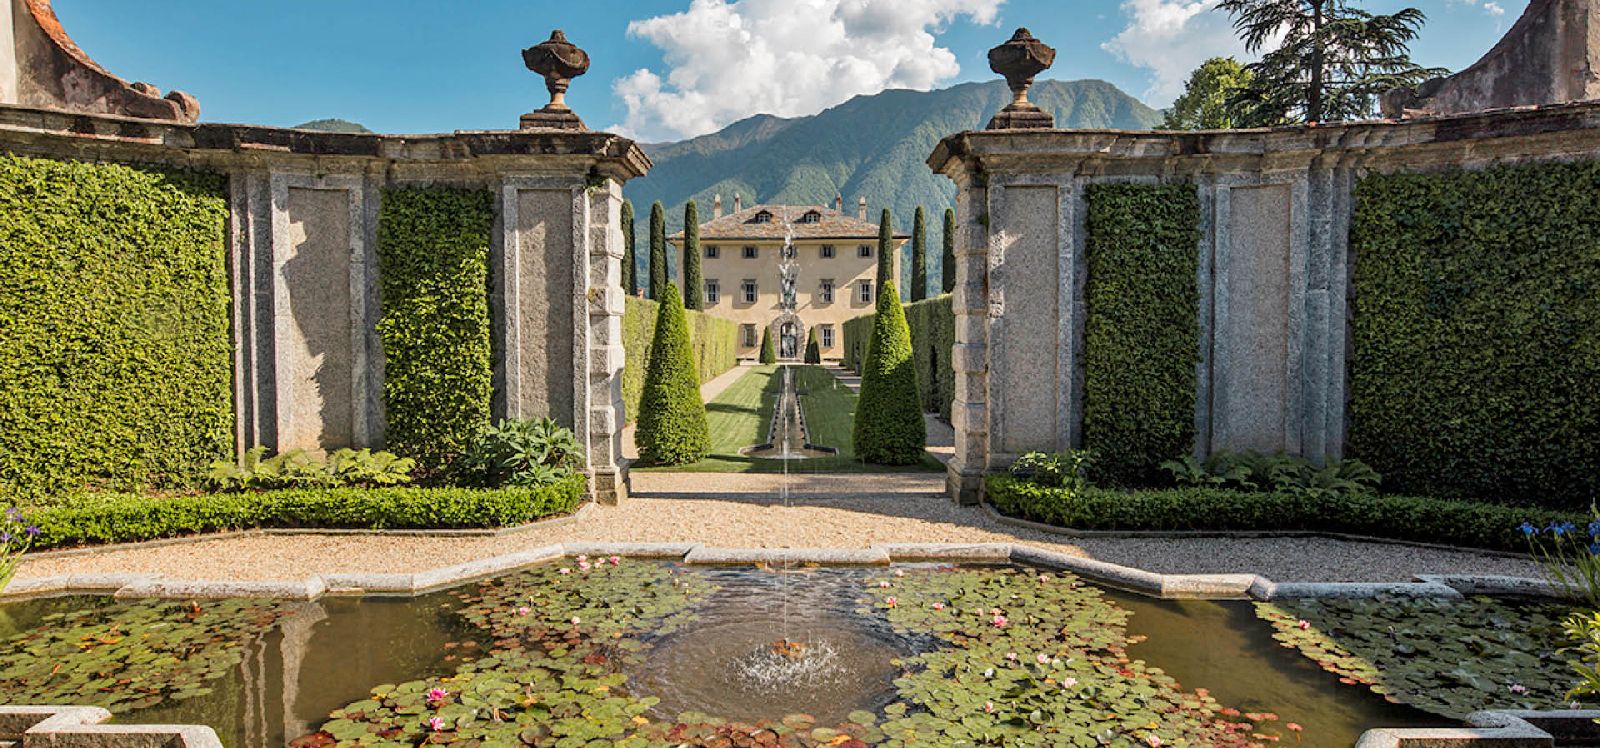 Grand entrance to Villa Balbiano Lake Como Italy